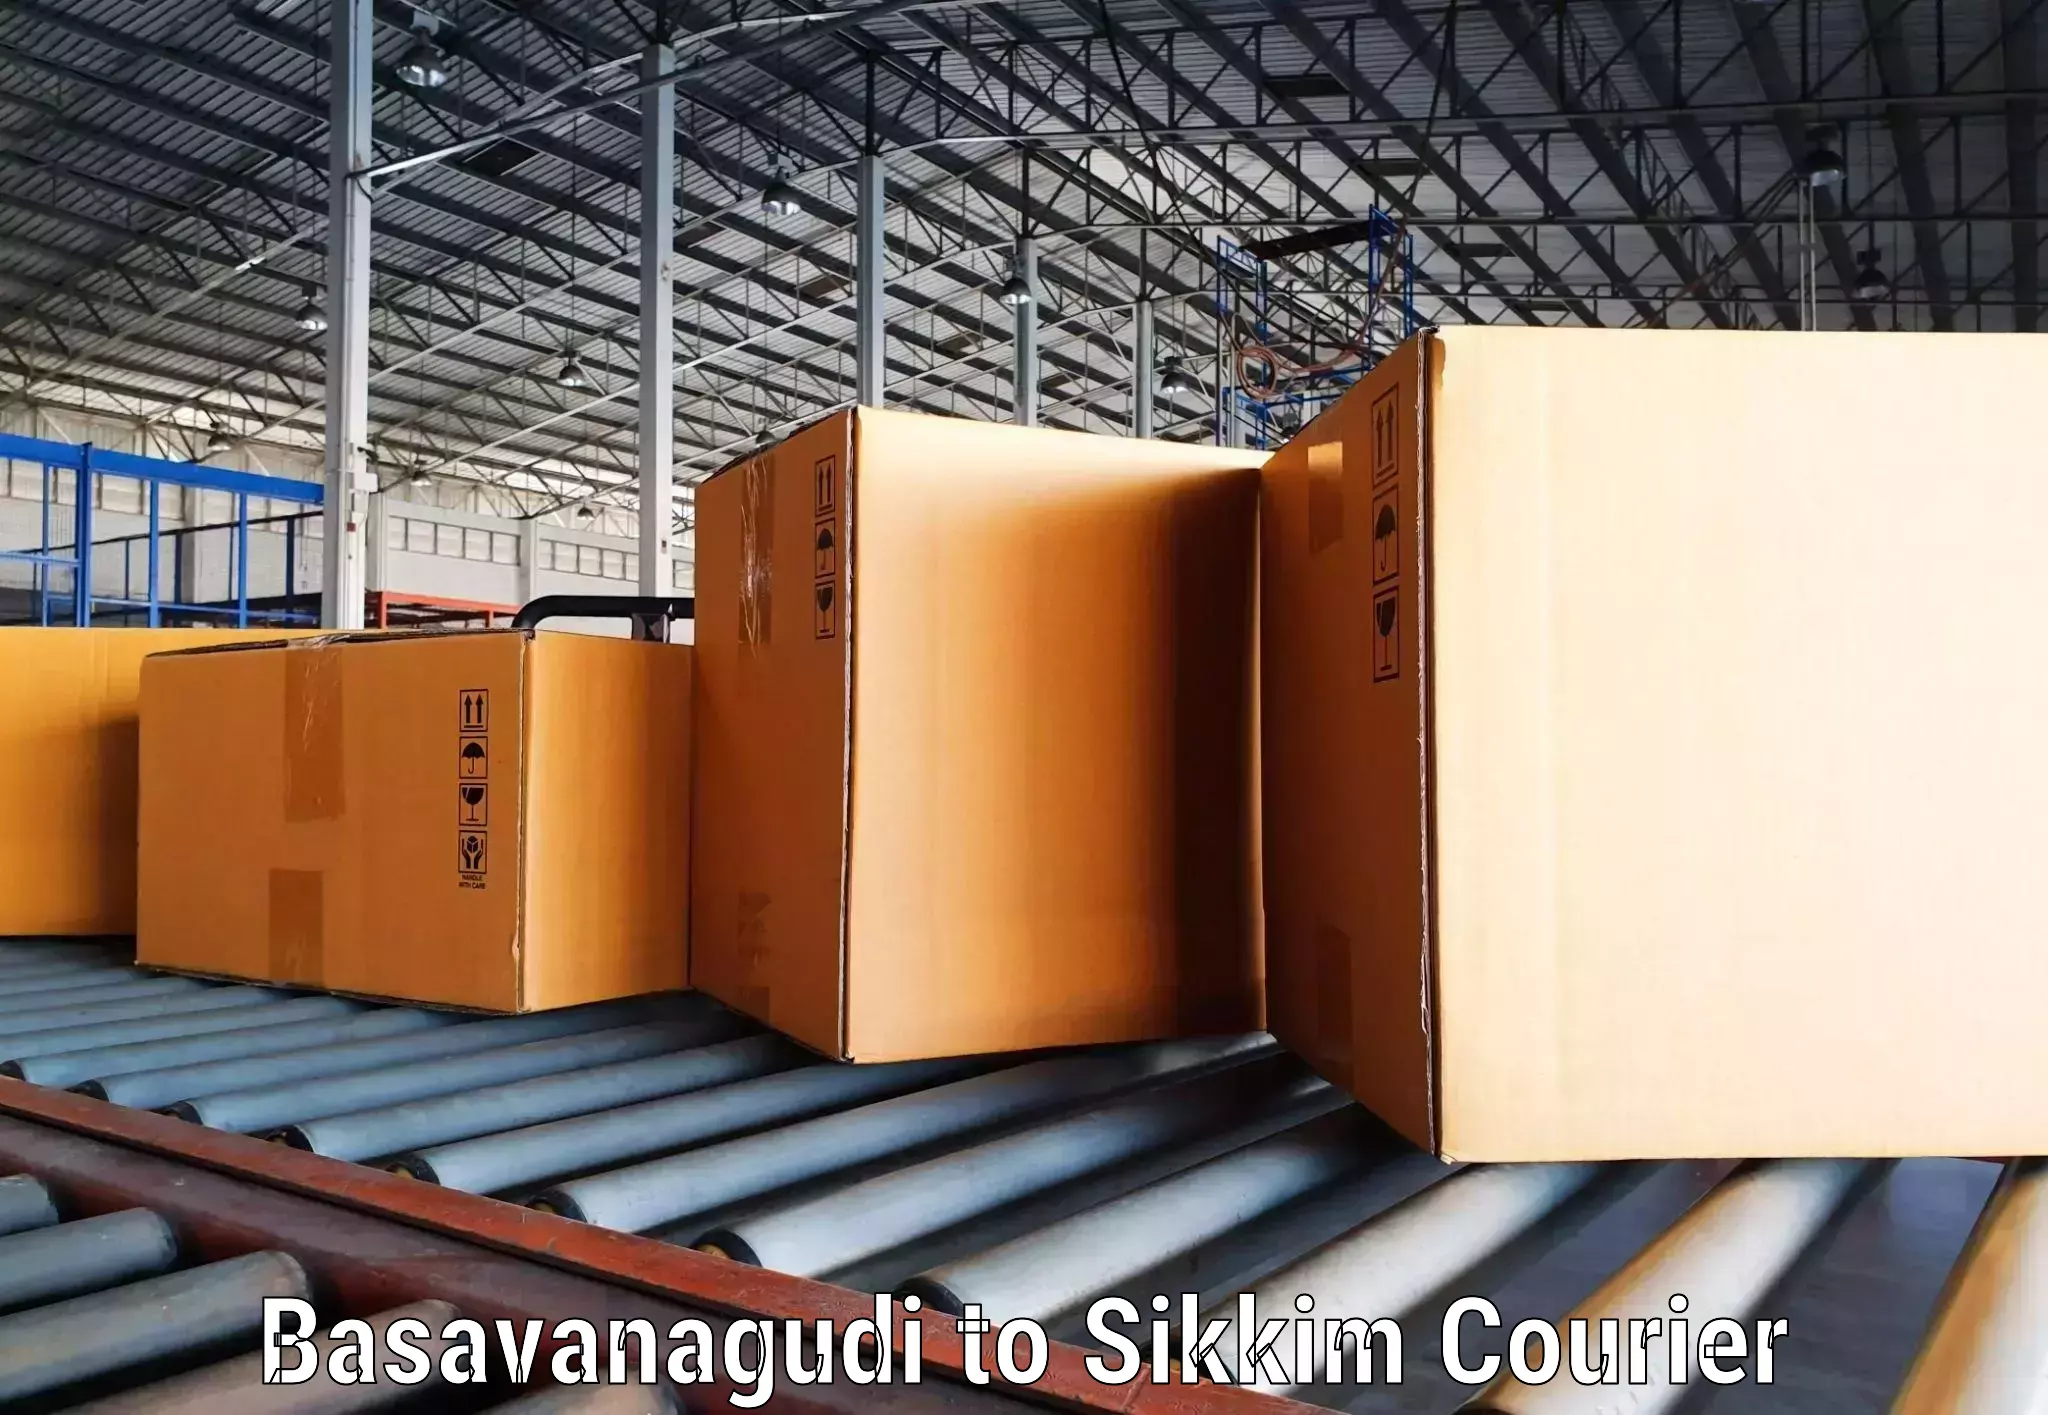 International courier networks Basavanagudi to West Sikkim